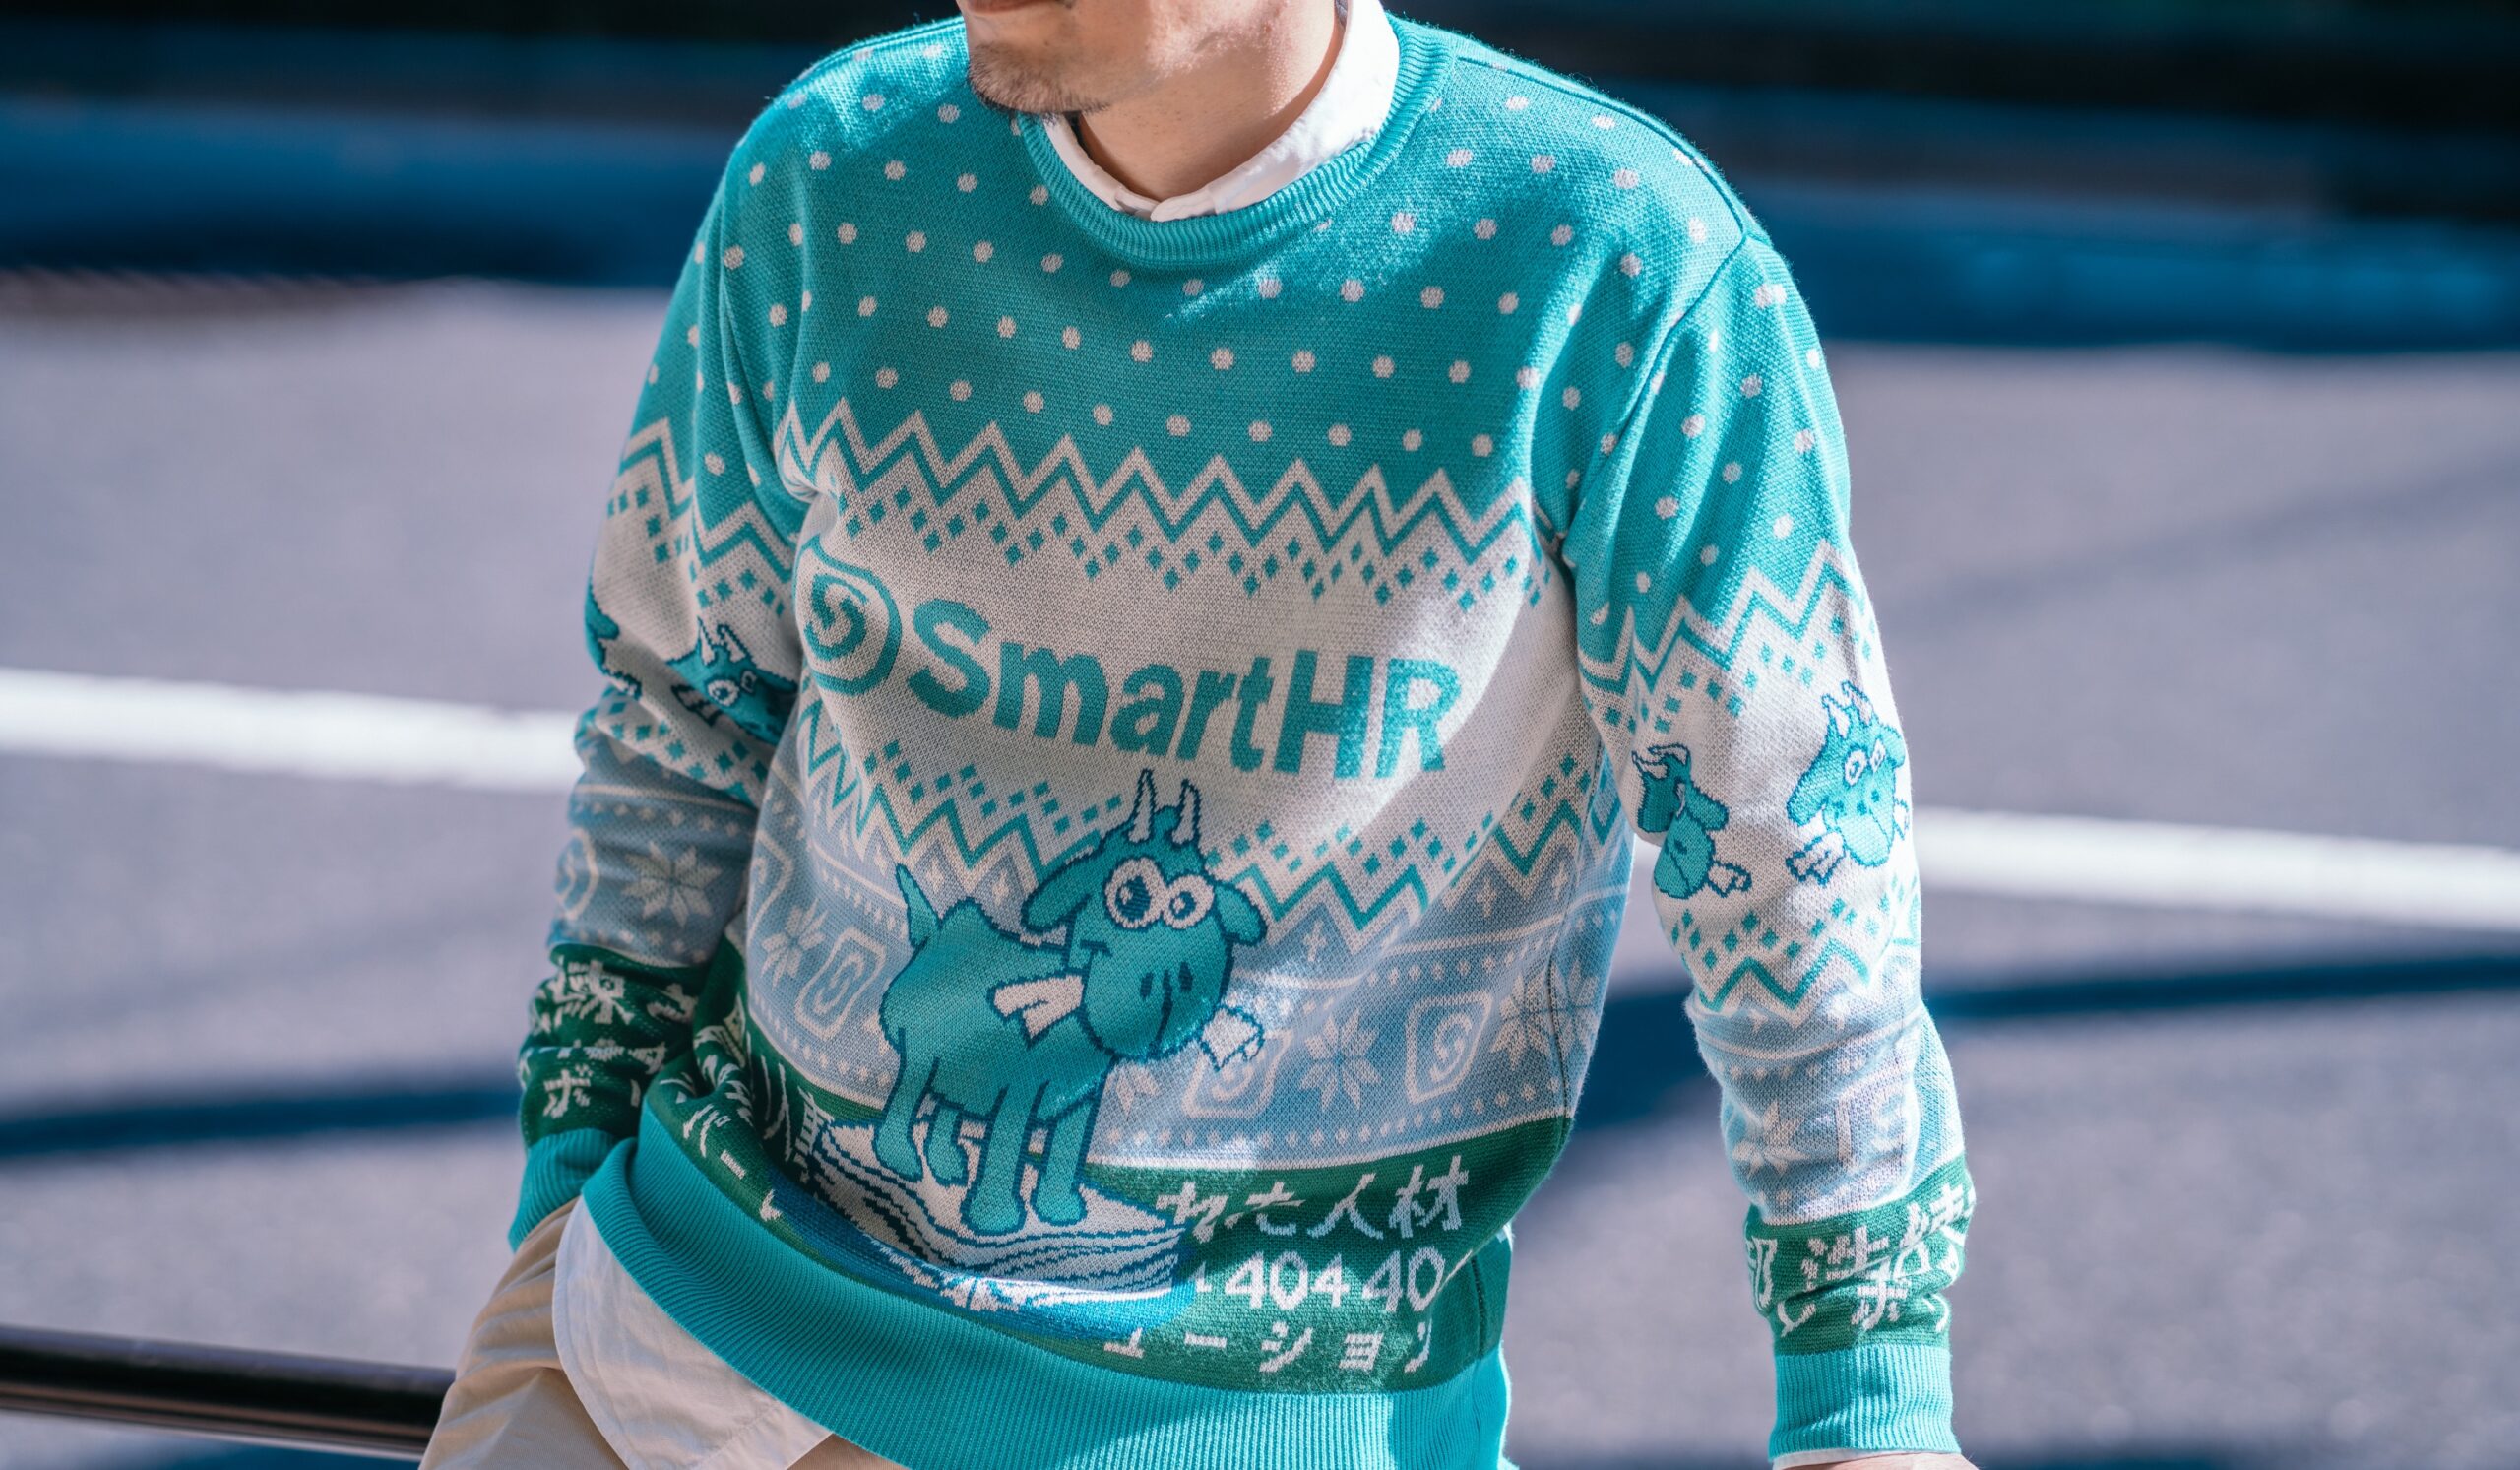 アイキャッチ、SmartHRオリジナルアグリーセーター 「かわいいヤギのセーター」を着用したモデル写真